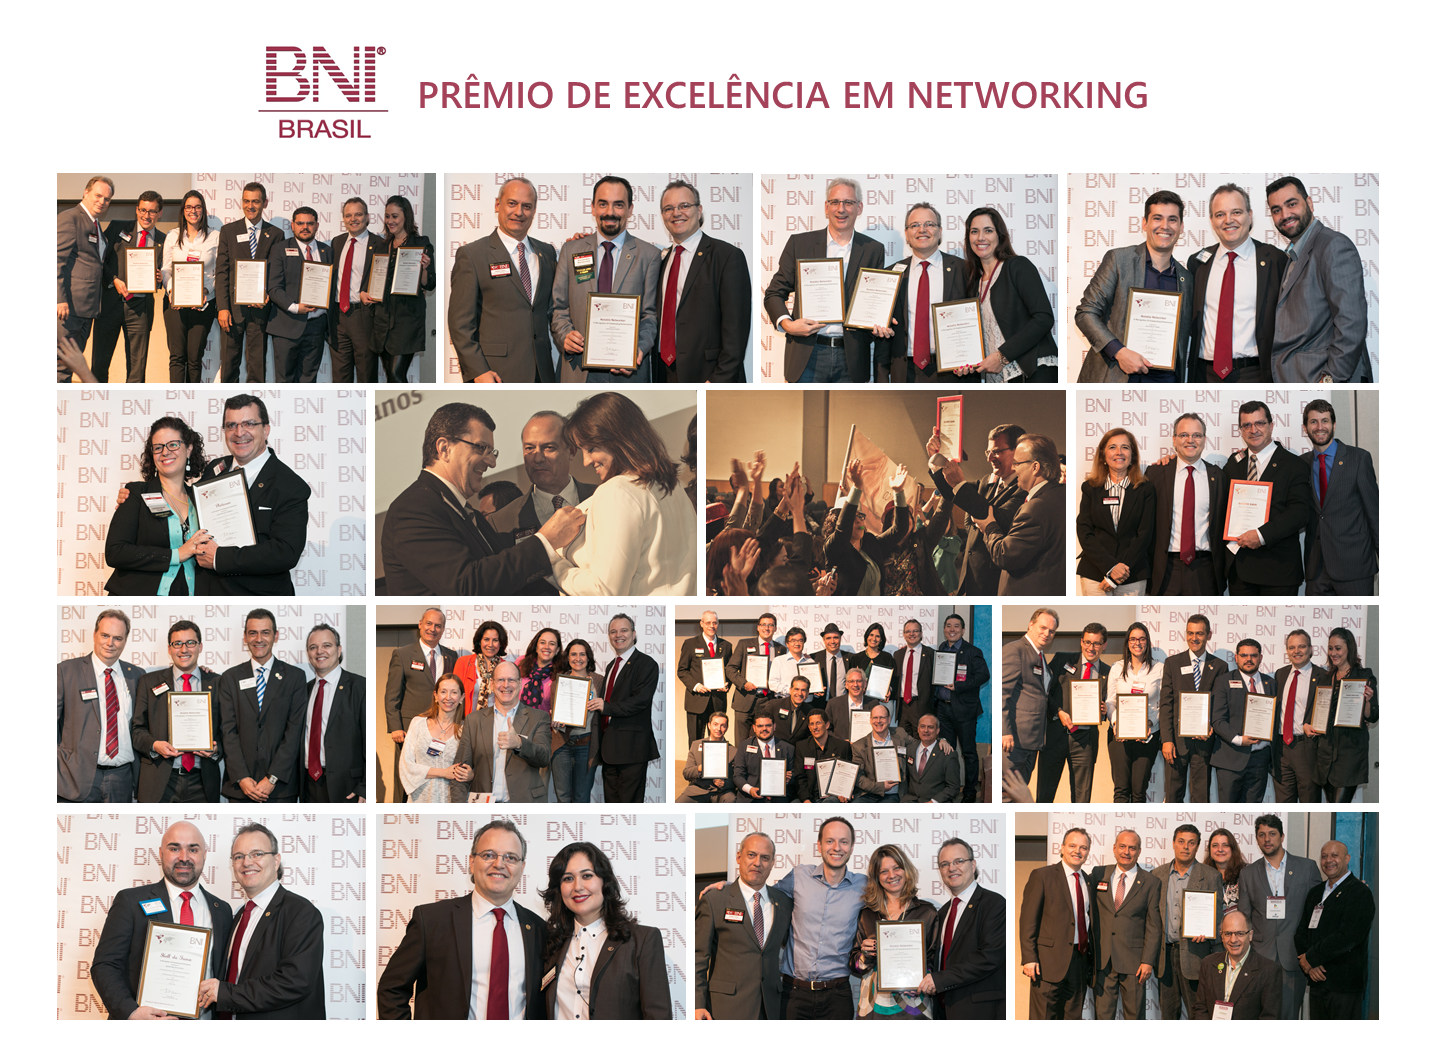 PRÊMIO DE EXCELÊNCIA EM NETWORKING BNI BRASIL – PREMIAÇÃO NACIONAL 2015-2016